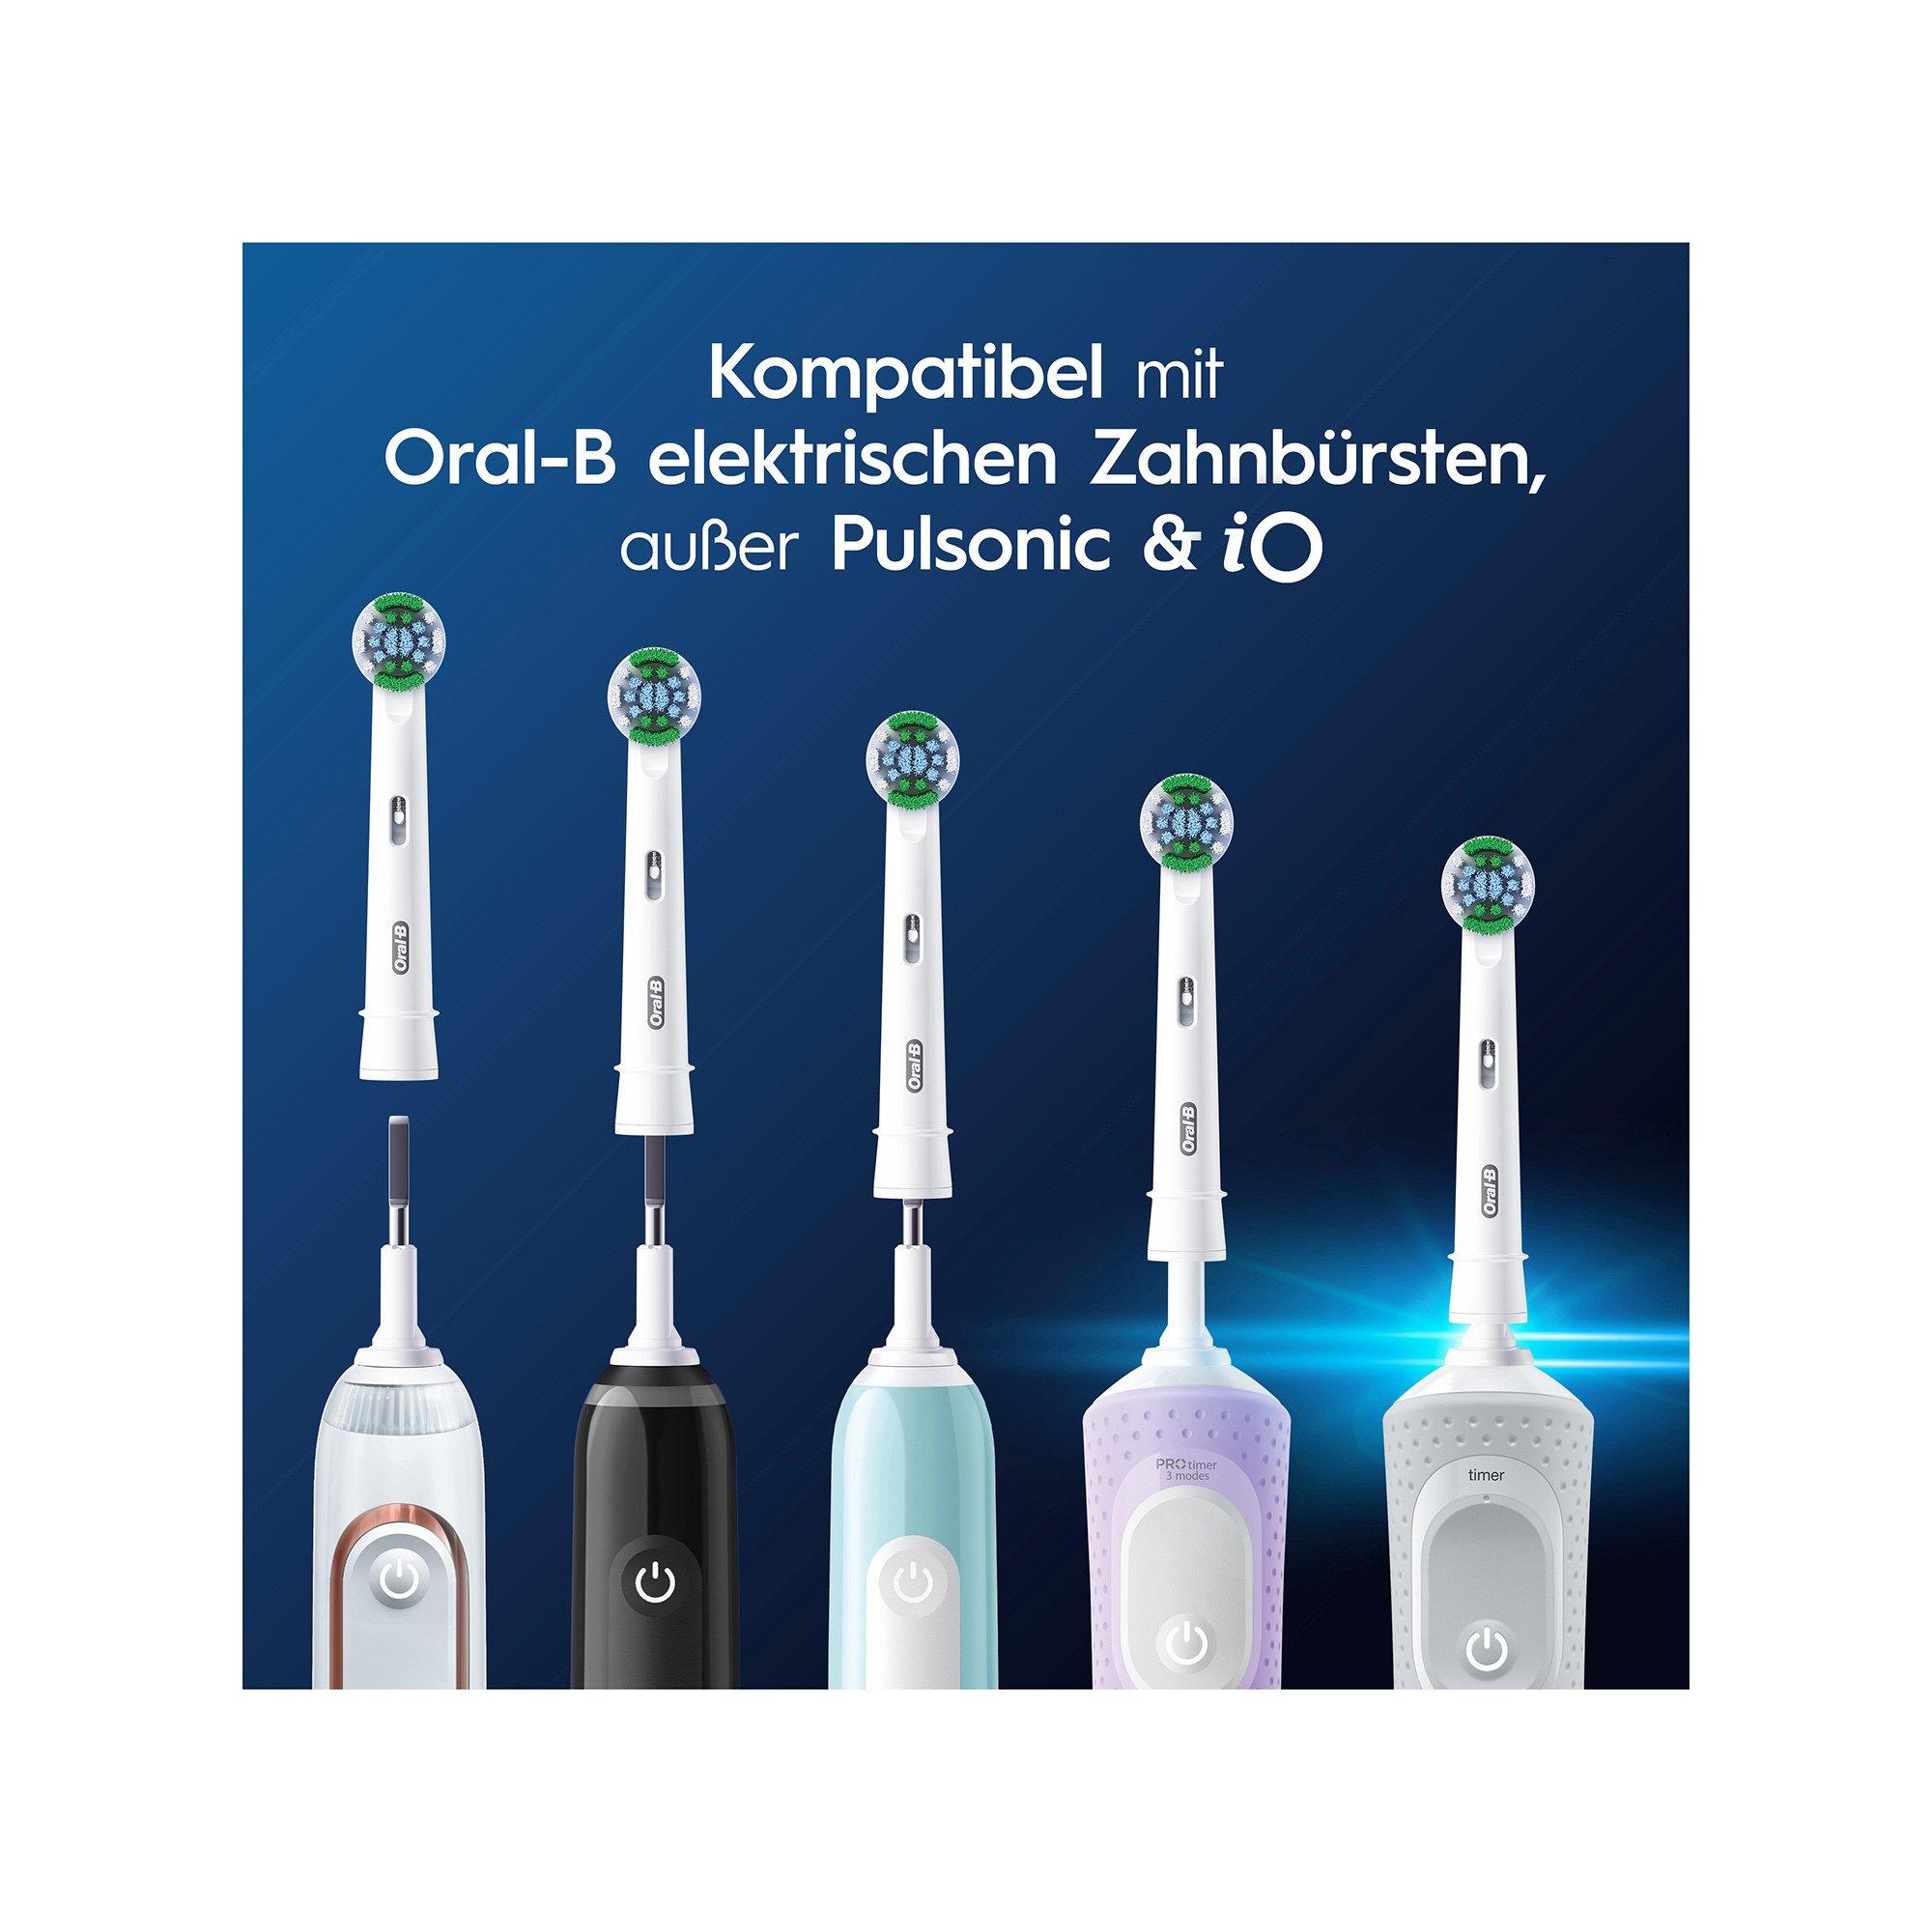 Oral-B Oral-B brosses de rechange Pro Precision Clean 5 pcs 